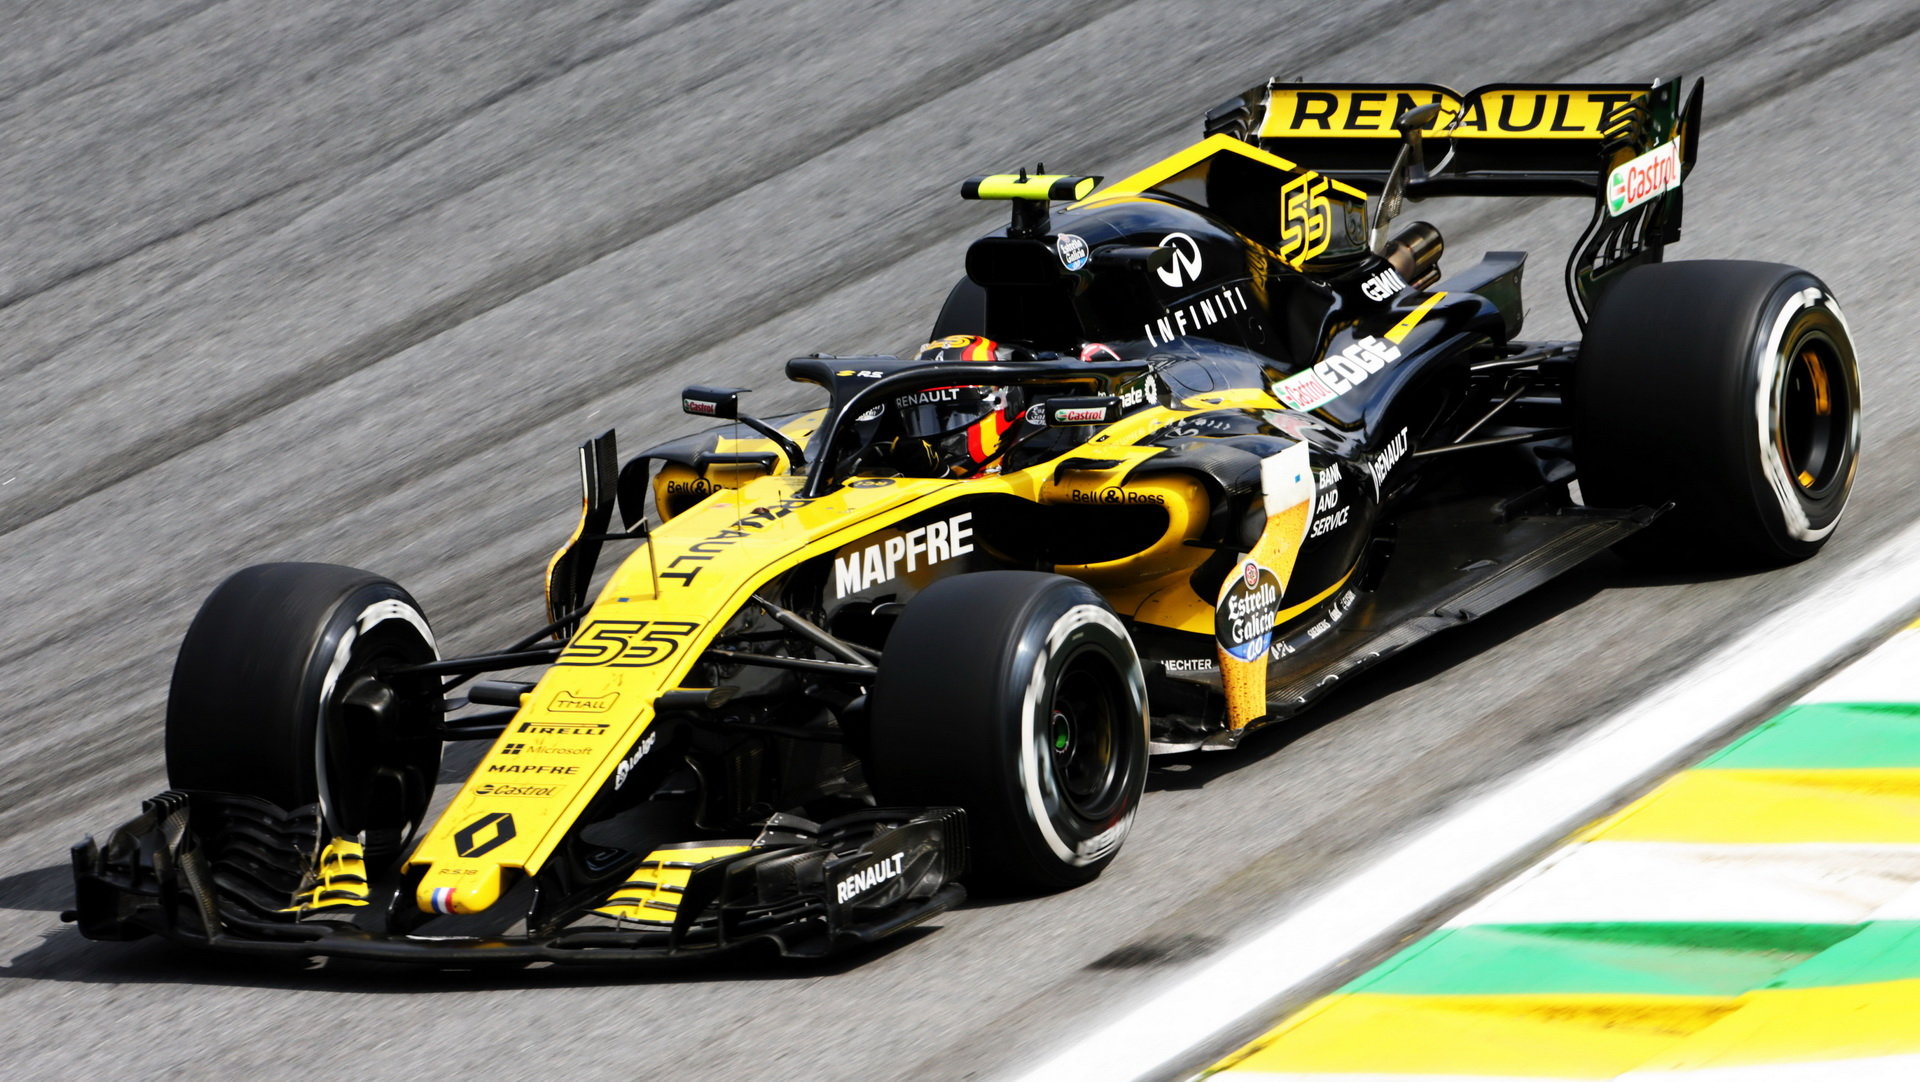 Carlos Sainz v závodě v Brazílii